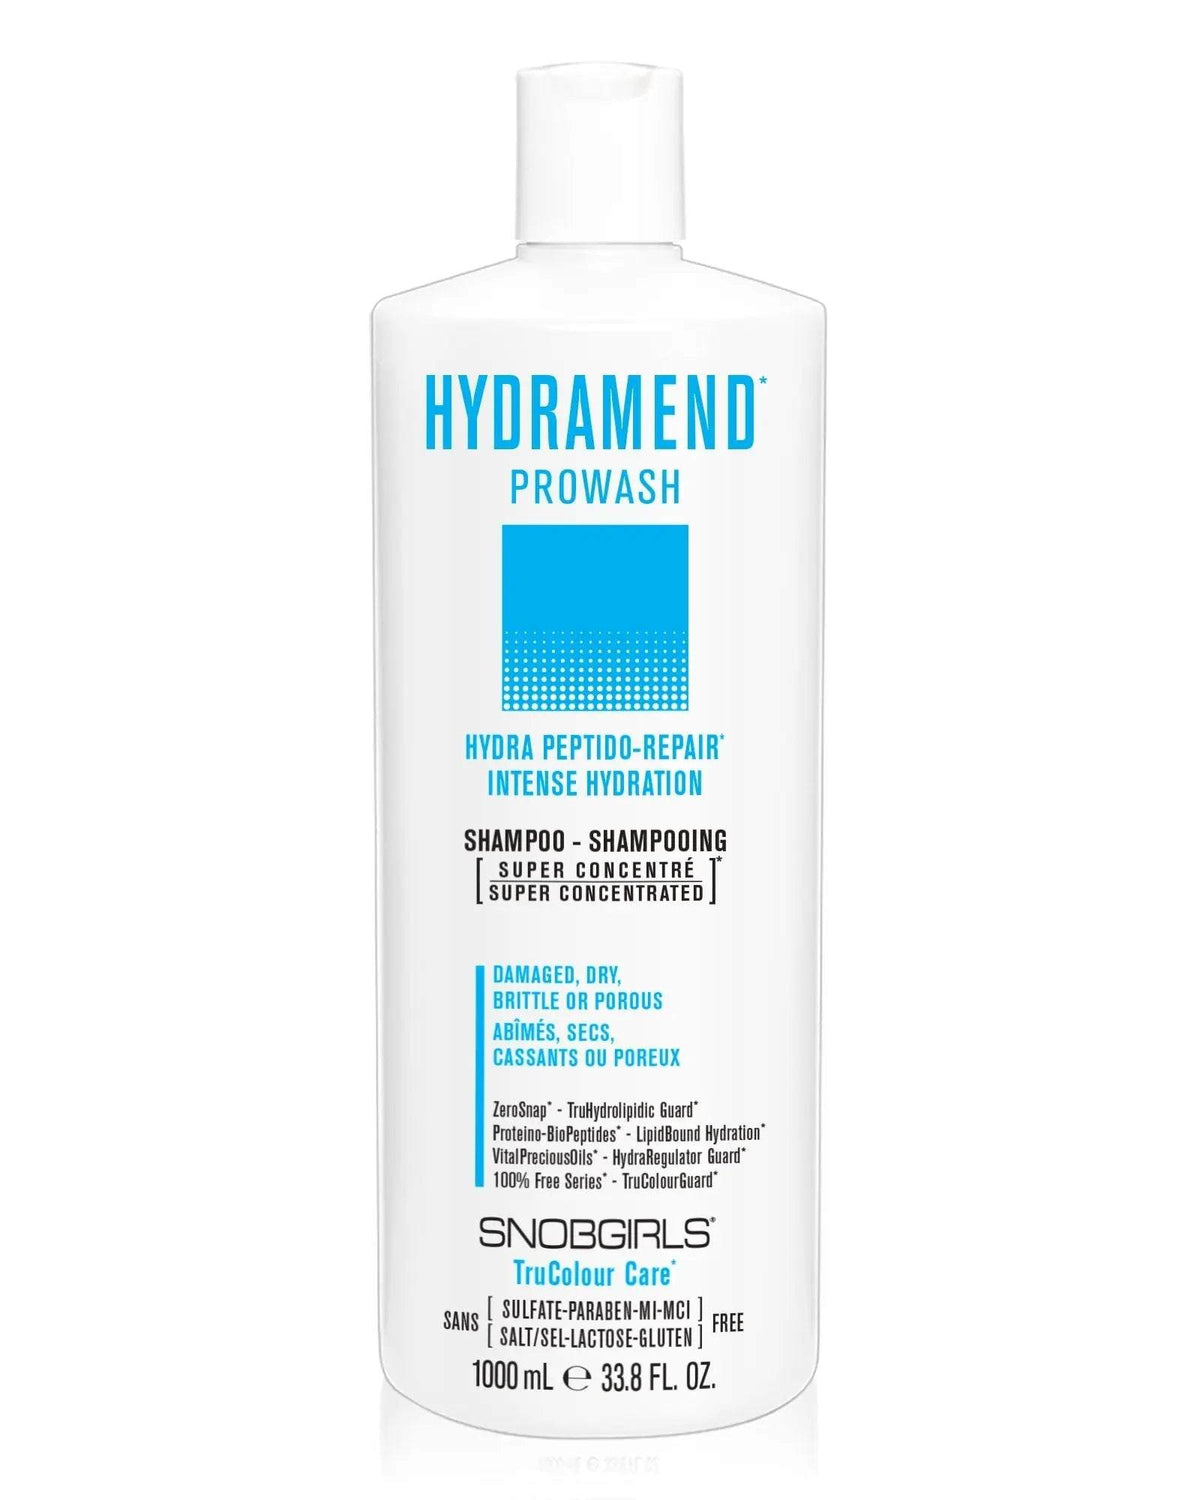 HYDRAMEND Prowash (shampoo) 1000 mL - SNOBGIRLS Canada